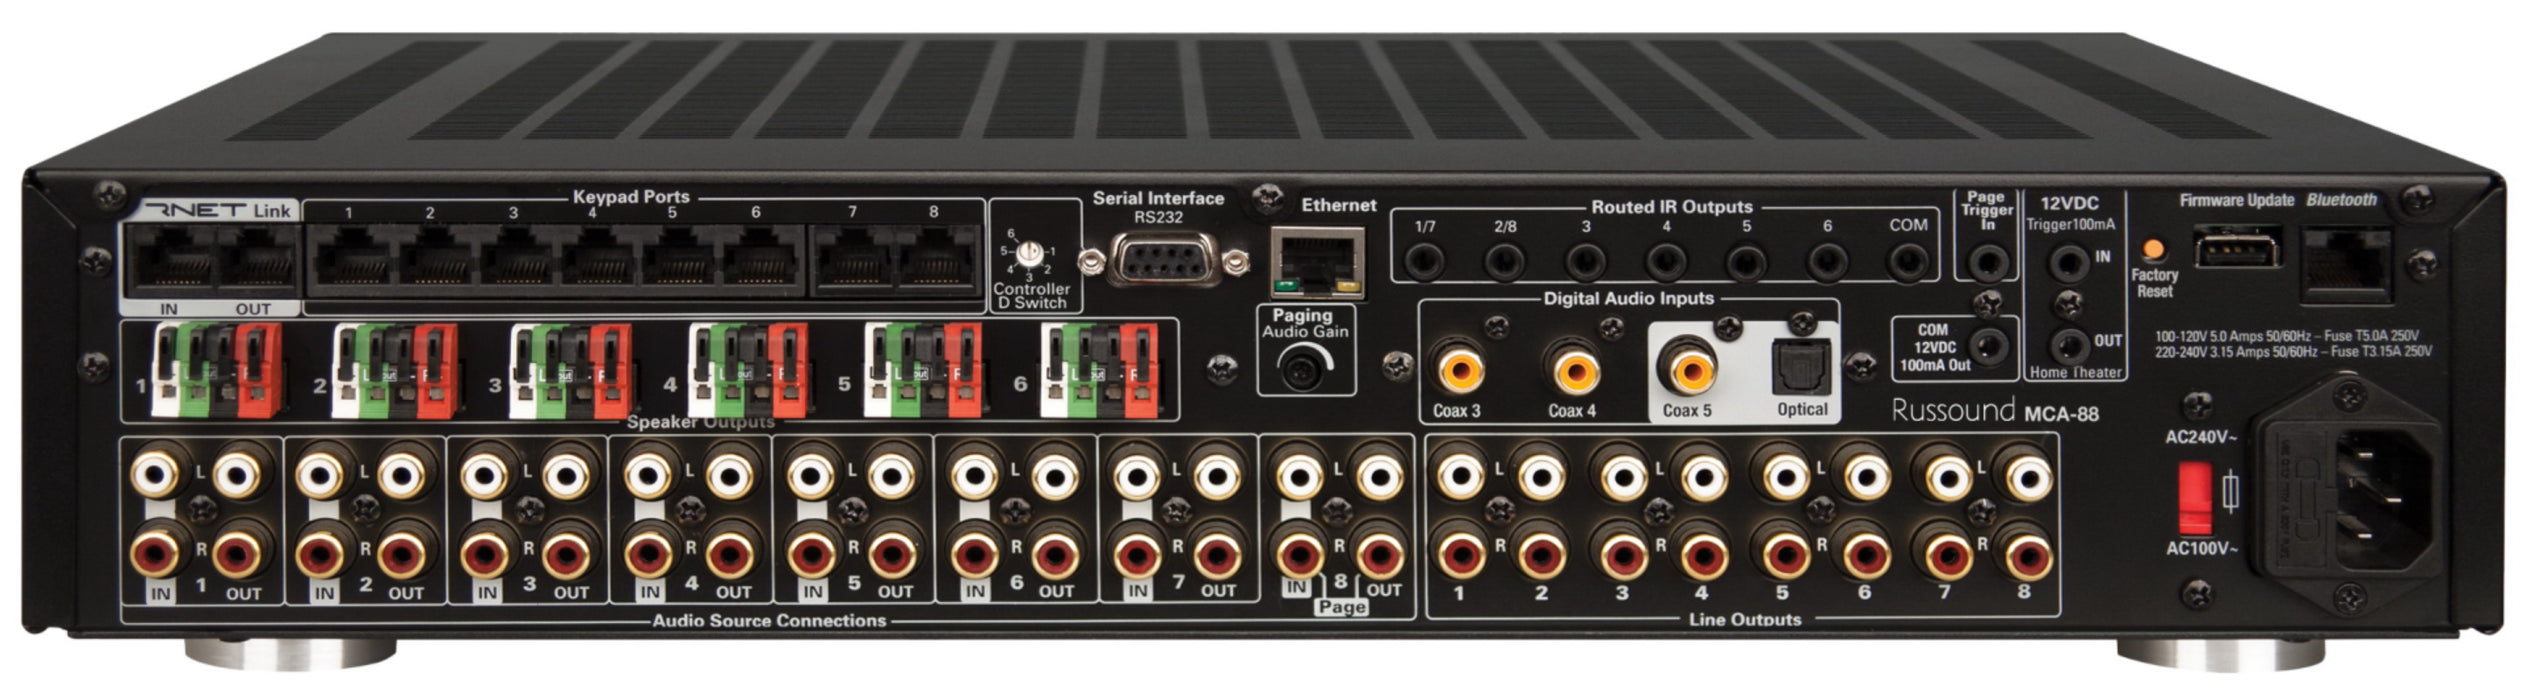 Russound MCA-88 - Amplificateur multizones pour les systèmes Russound. 8 sources/6 zones amplifiées @ 40W / ch, jusqu'à 8 entrées stéréo niveau ligne, 3 coaxiales numériques et 1 optiques et contrôle vocal est disponible en utilisant Amazon Alexa